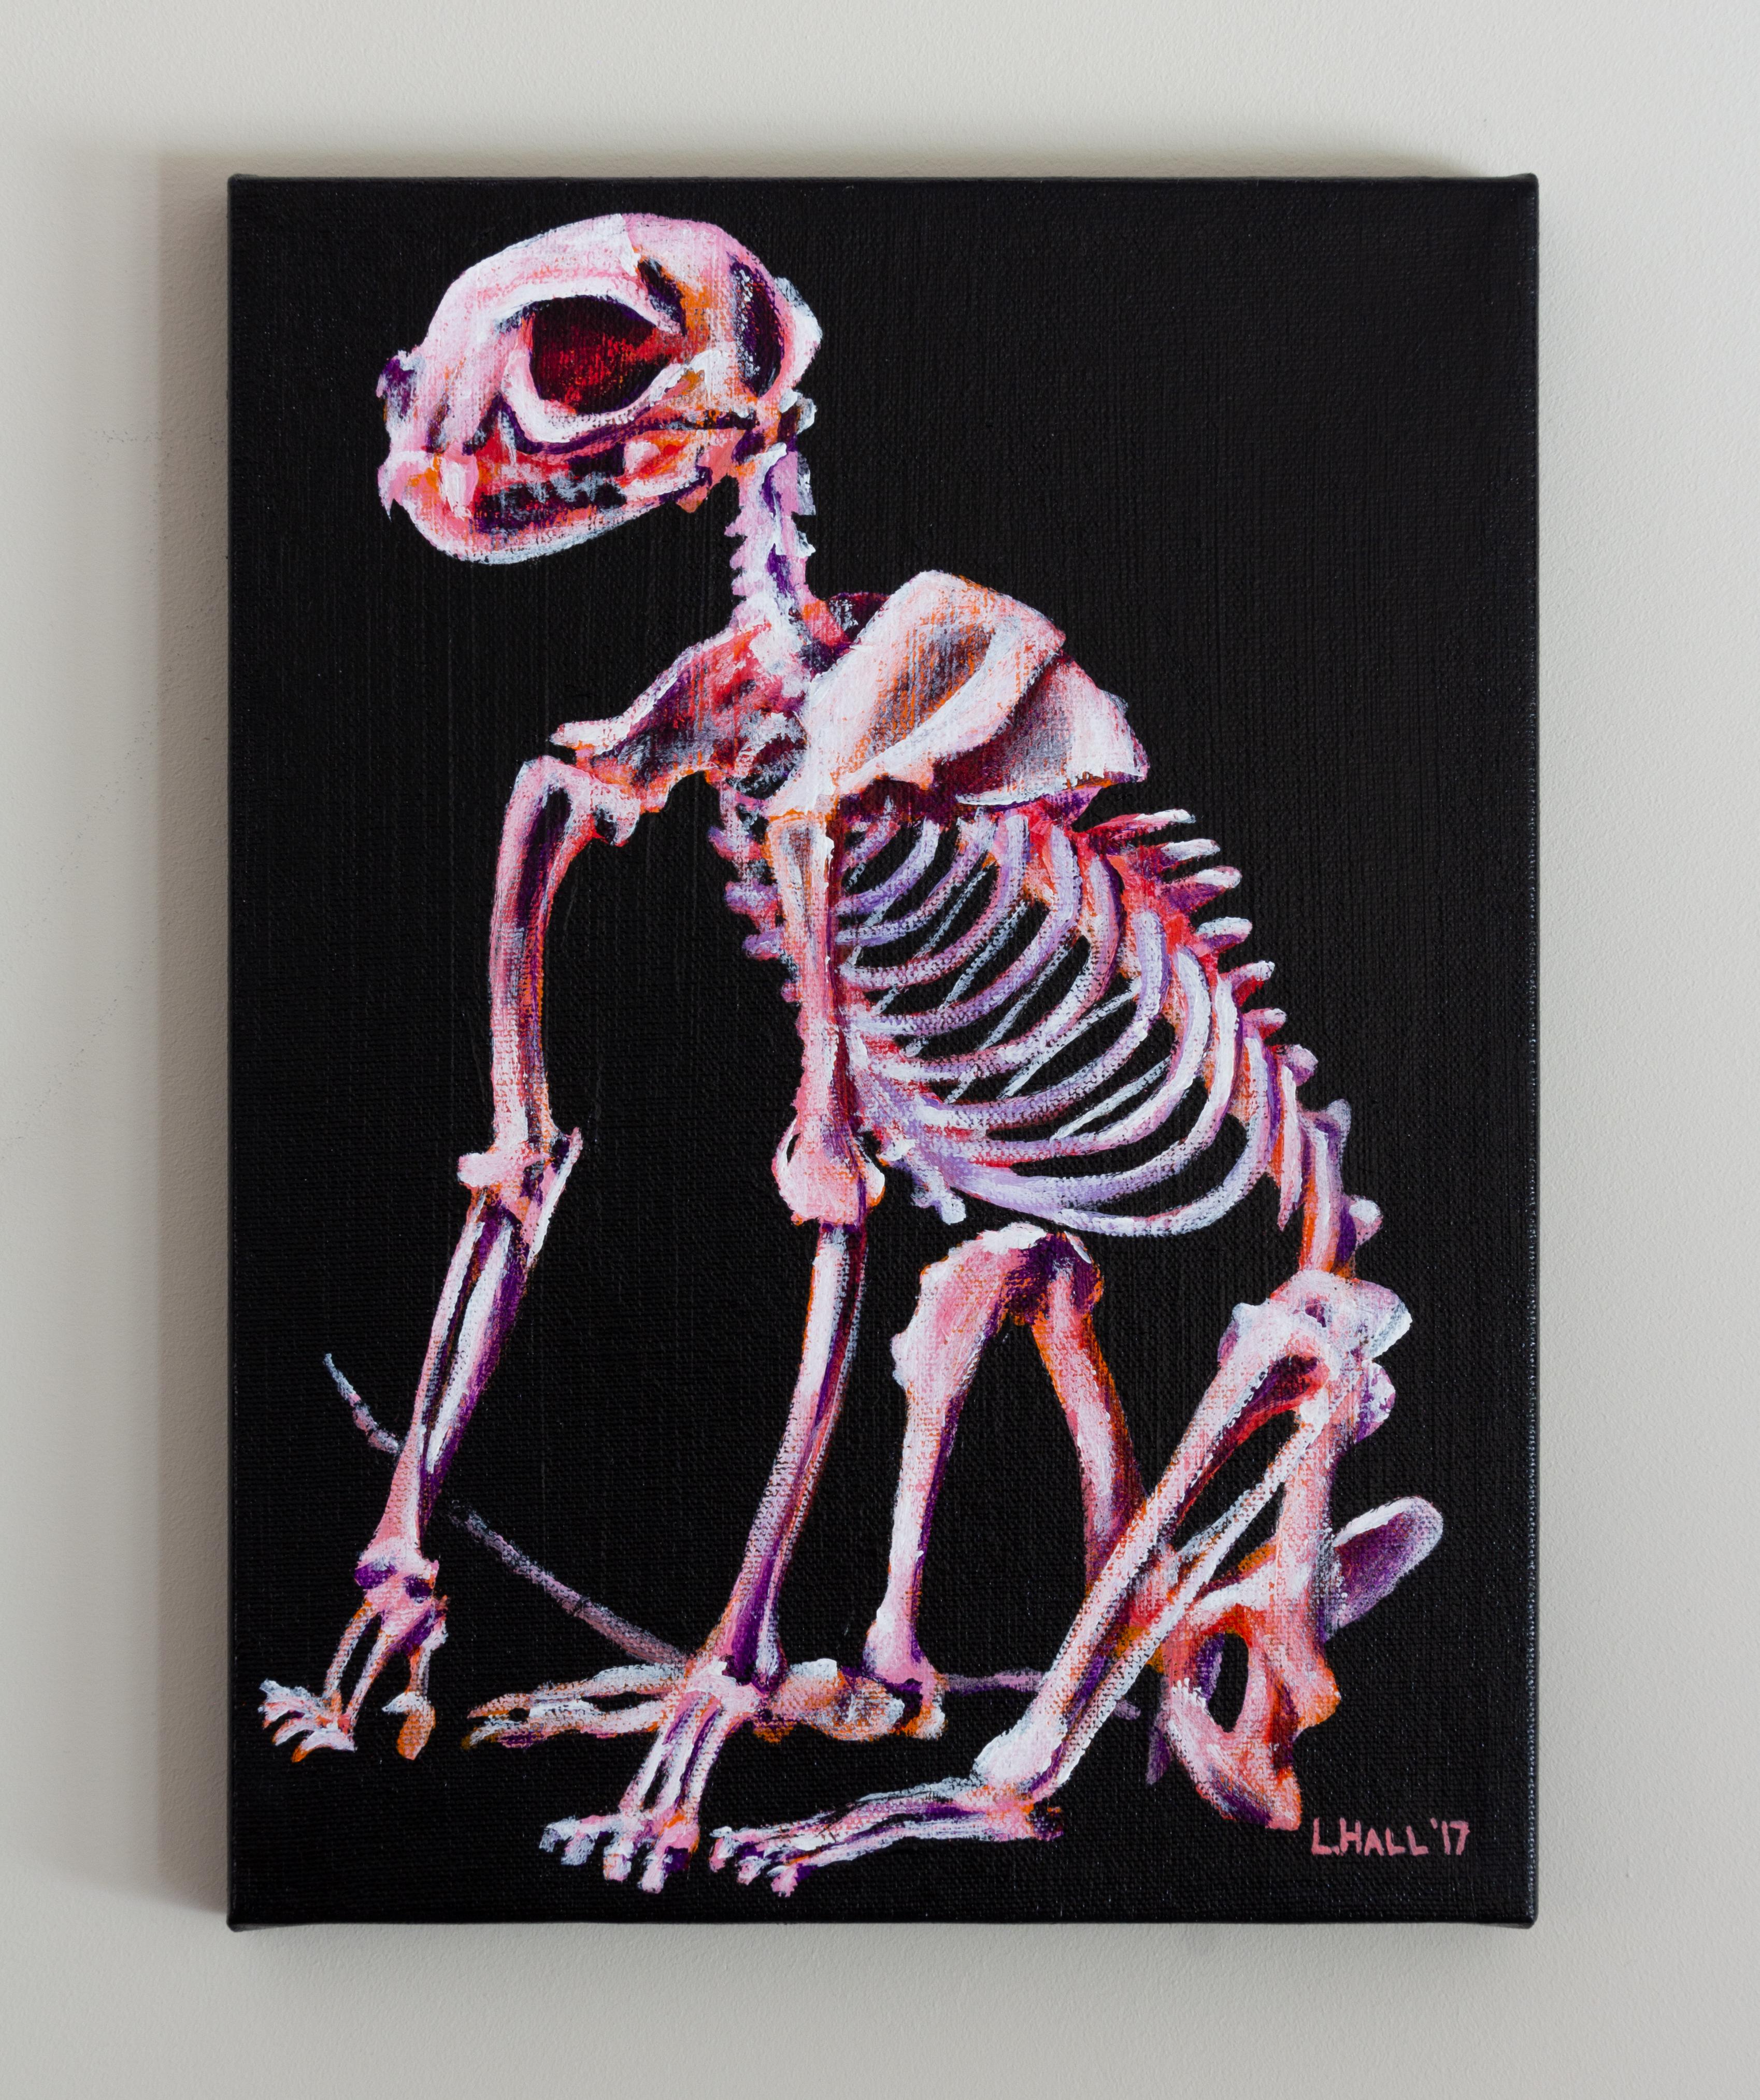 Squelette de chat, peinture contemporaine originale signée noire et rose sur toile - Contemporain Painting par Lindsay Hall